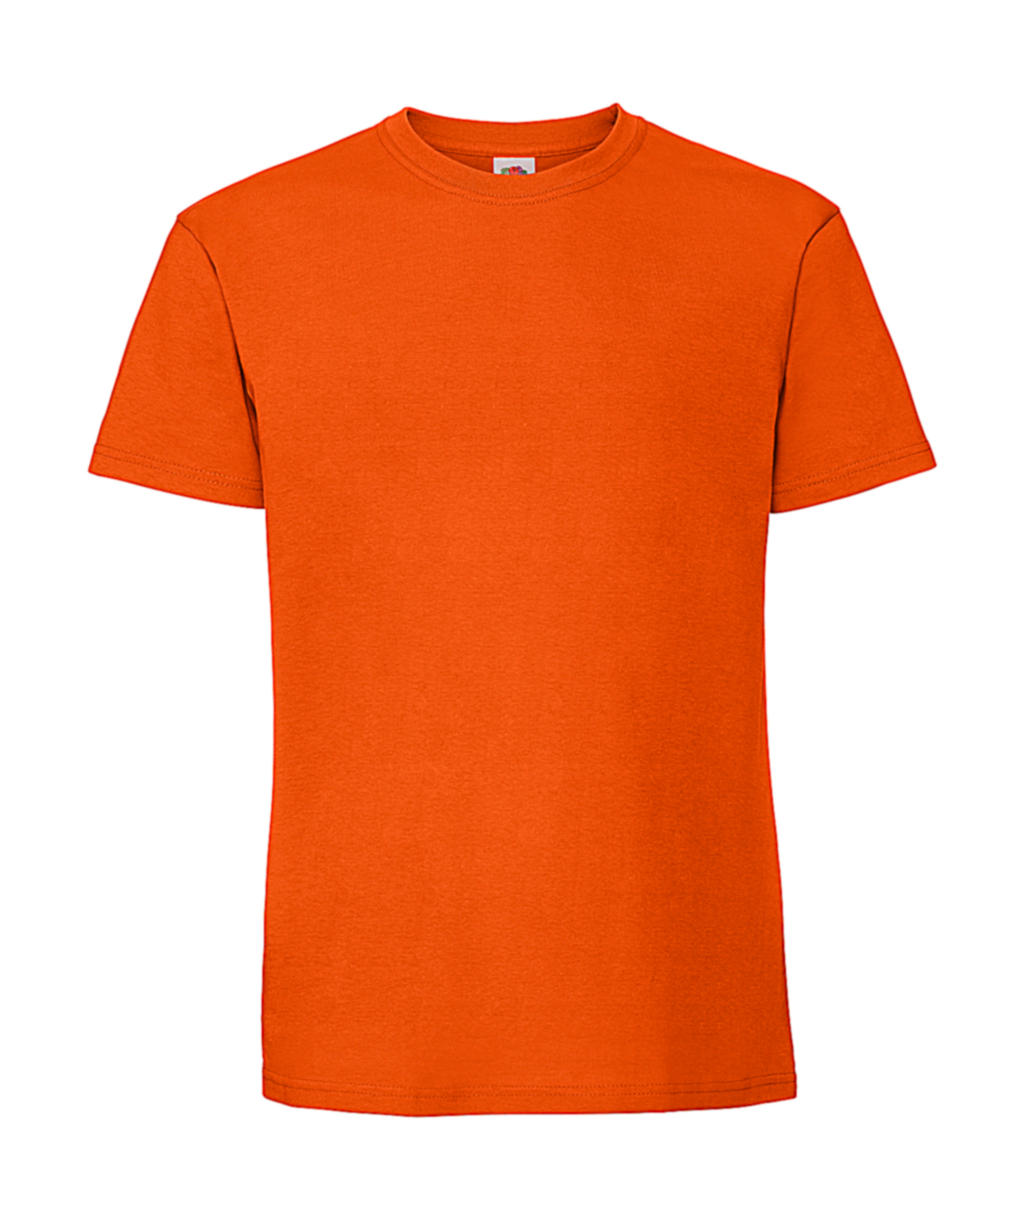 Tričko z prstencovej bavlny Iconic 195 Premium - orange